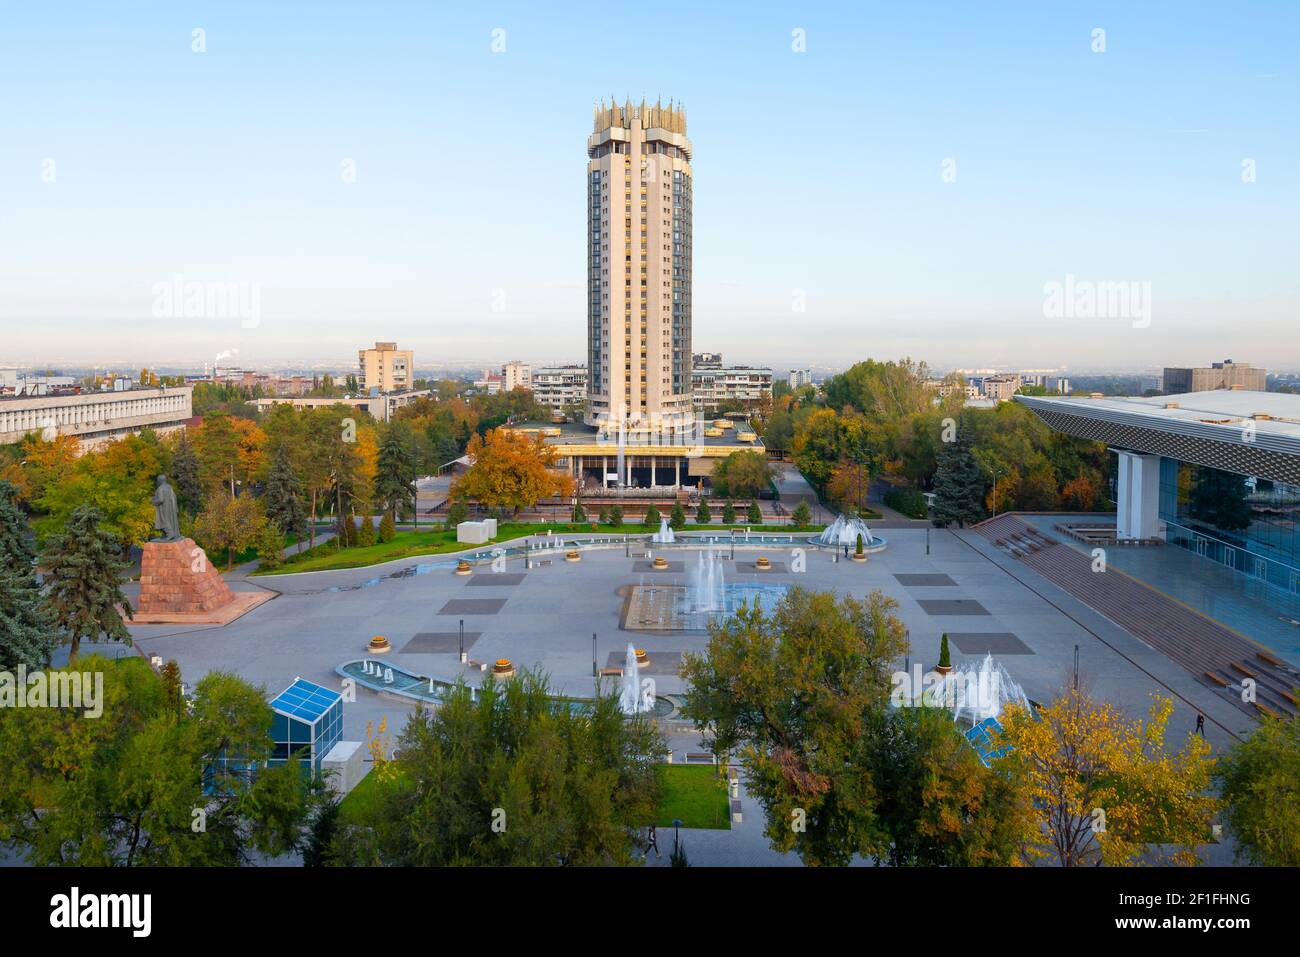 Kazakhstan Hotel torre in Piazza Abai, Almaty. Vegetazione e fontane d'acqua in Piazza Abay di fronte al Palazzo della Repubblica. Foto Stock